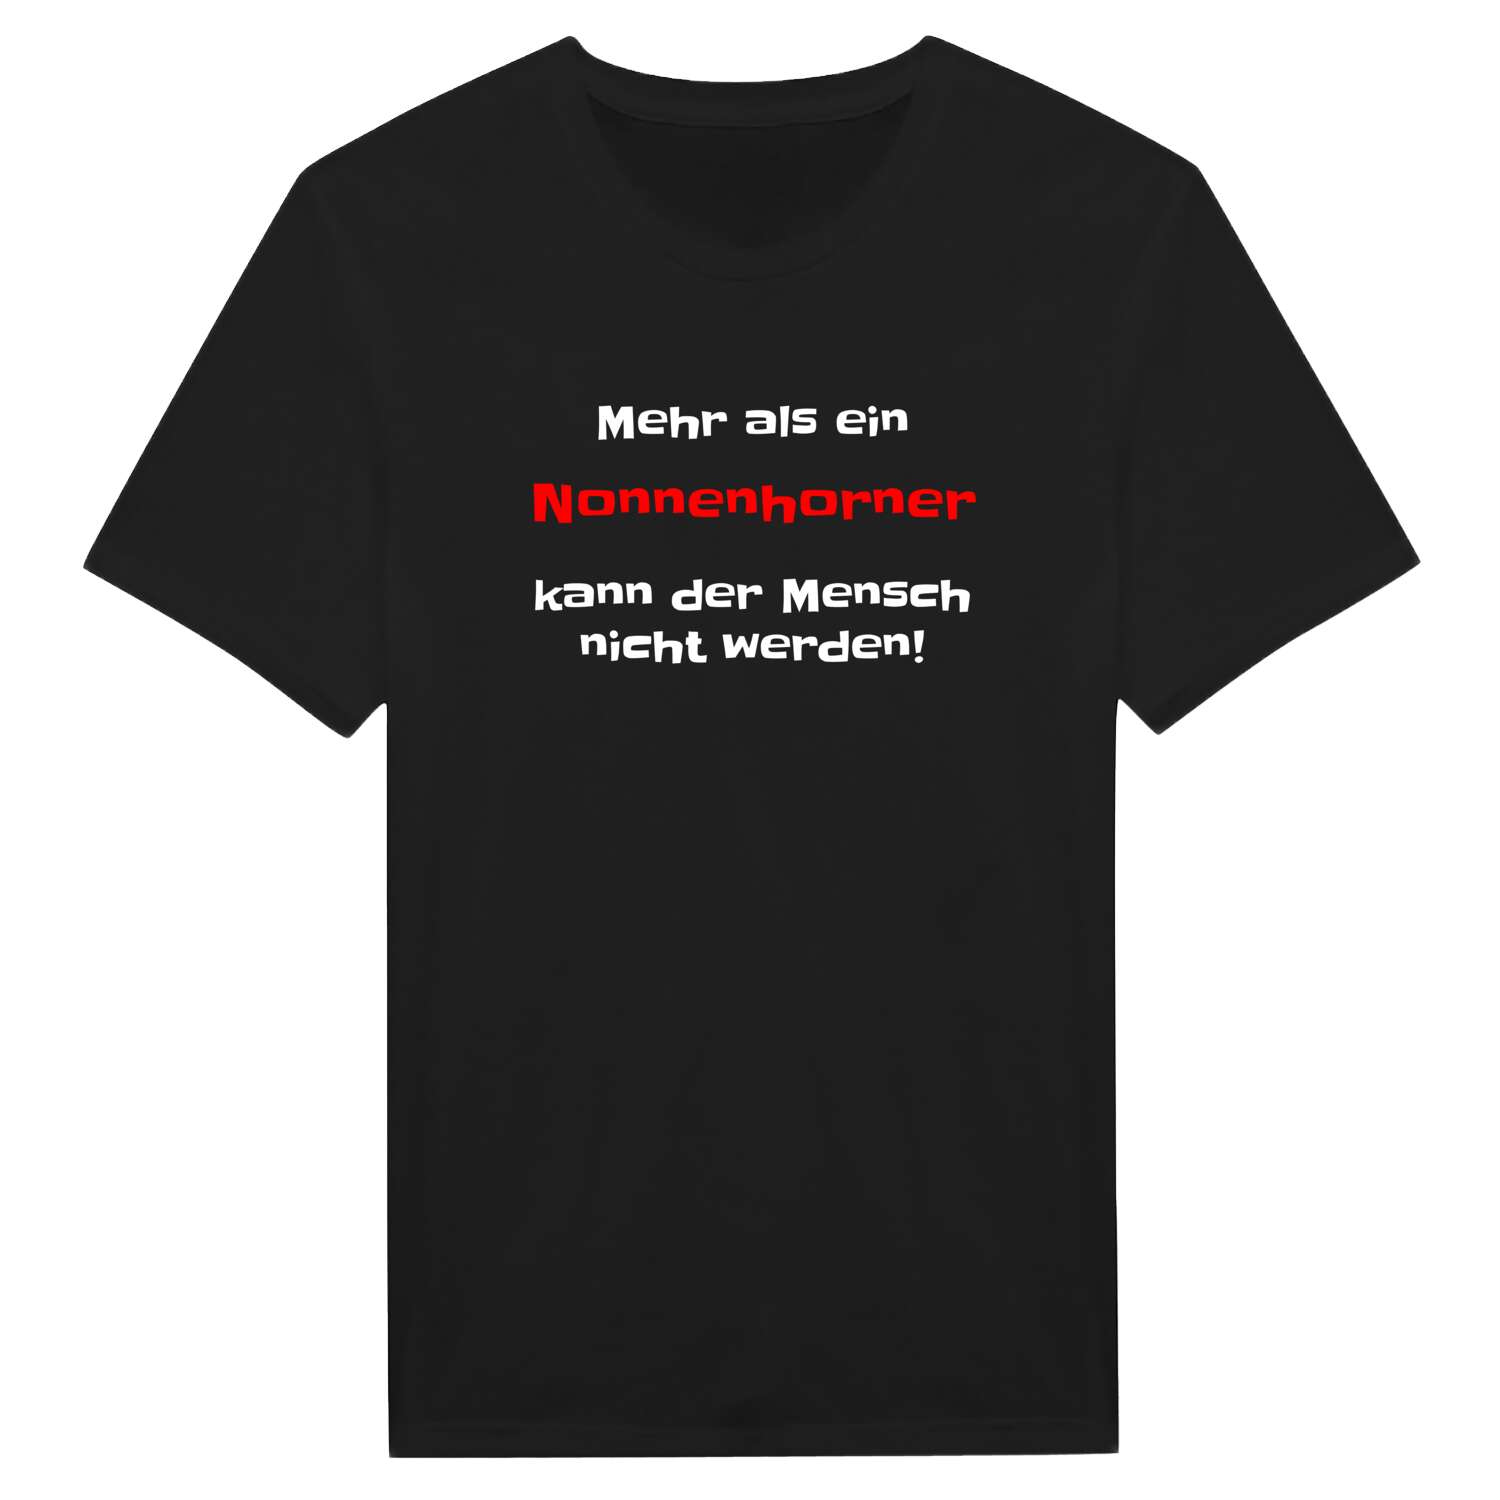 Nonnenhorn T-Shirt »Mehr als ein«